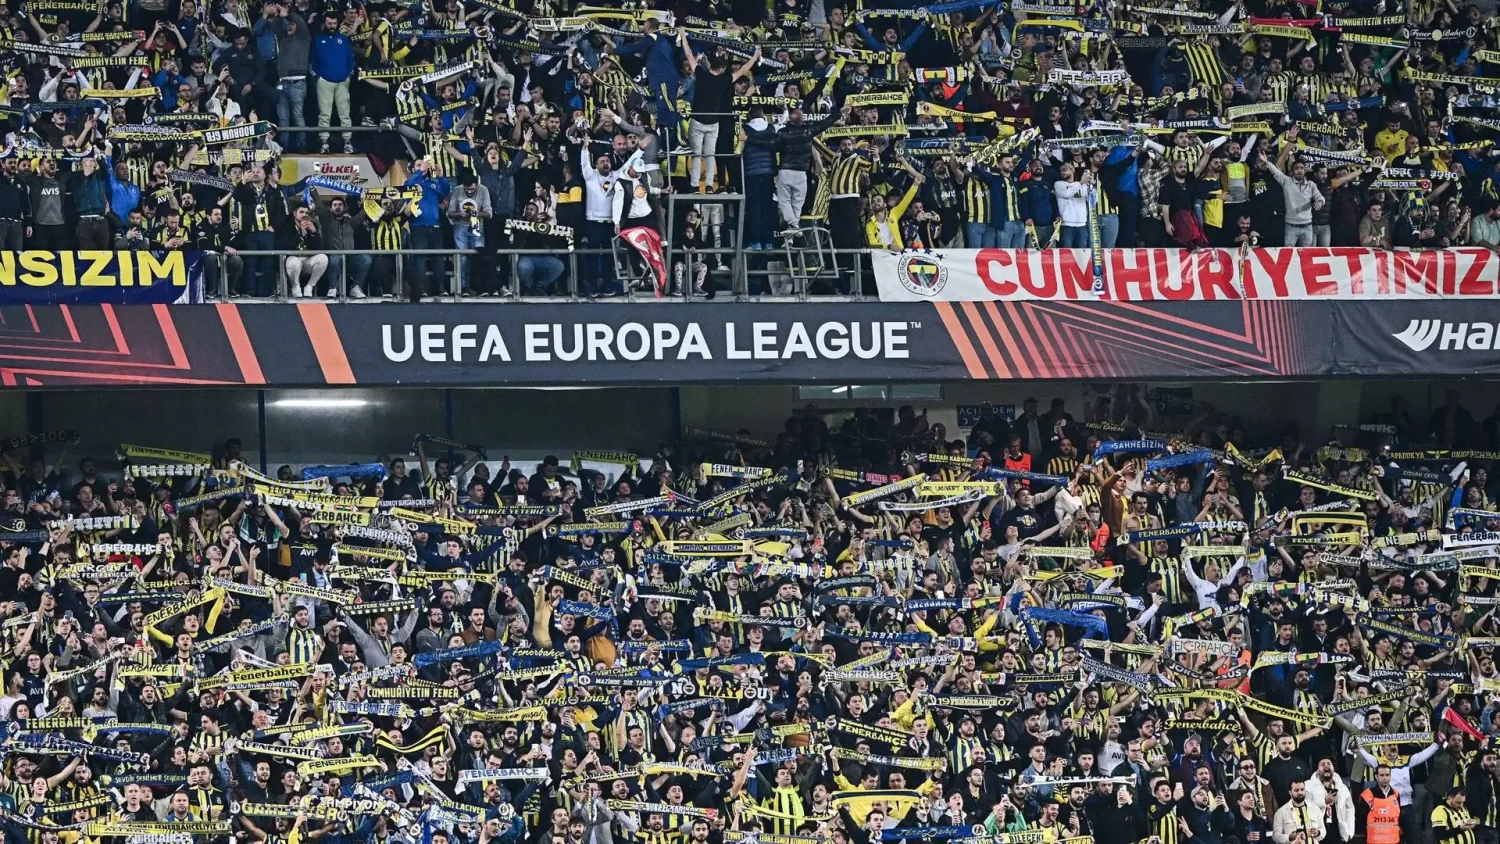 Son karar çıktı: Fenerbahçe taraftarı, Kayserispor maçına giremeyecek